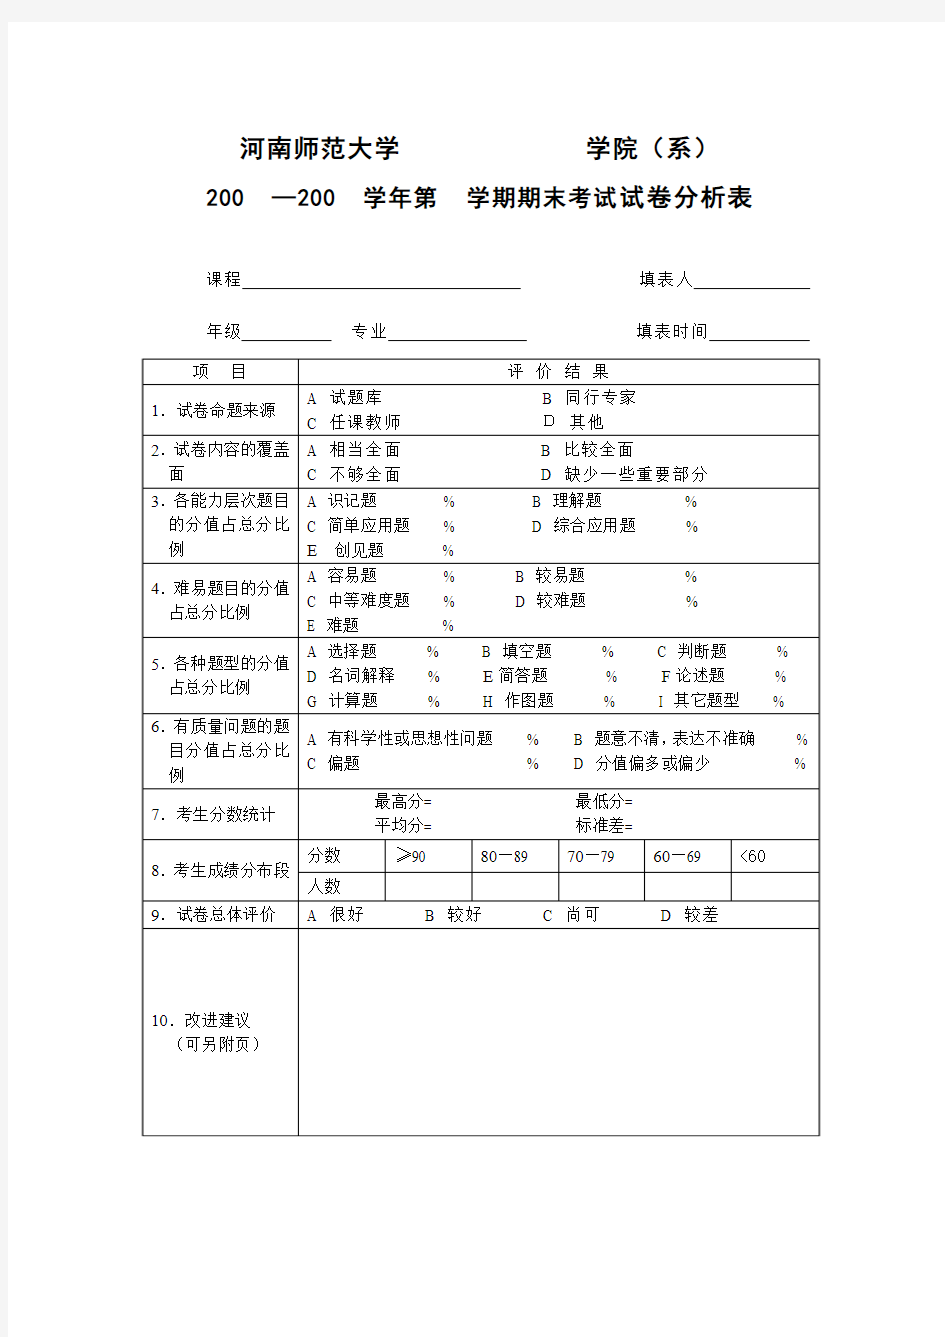 河南师范大学期末考试试卷分析表(样板)